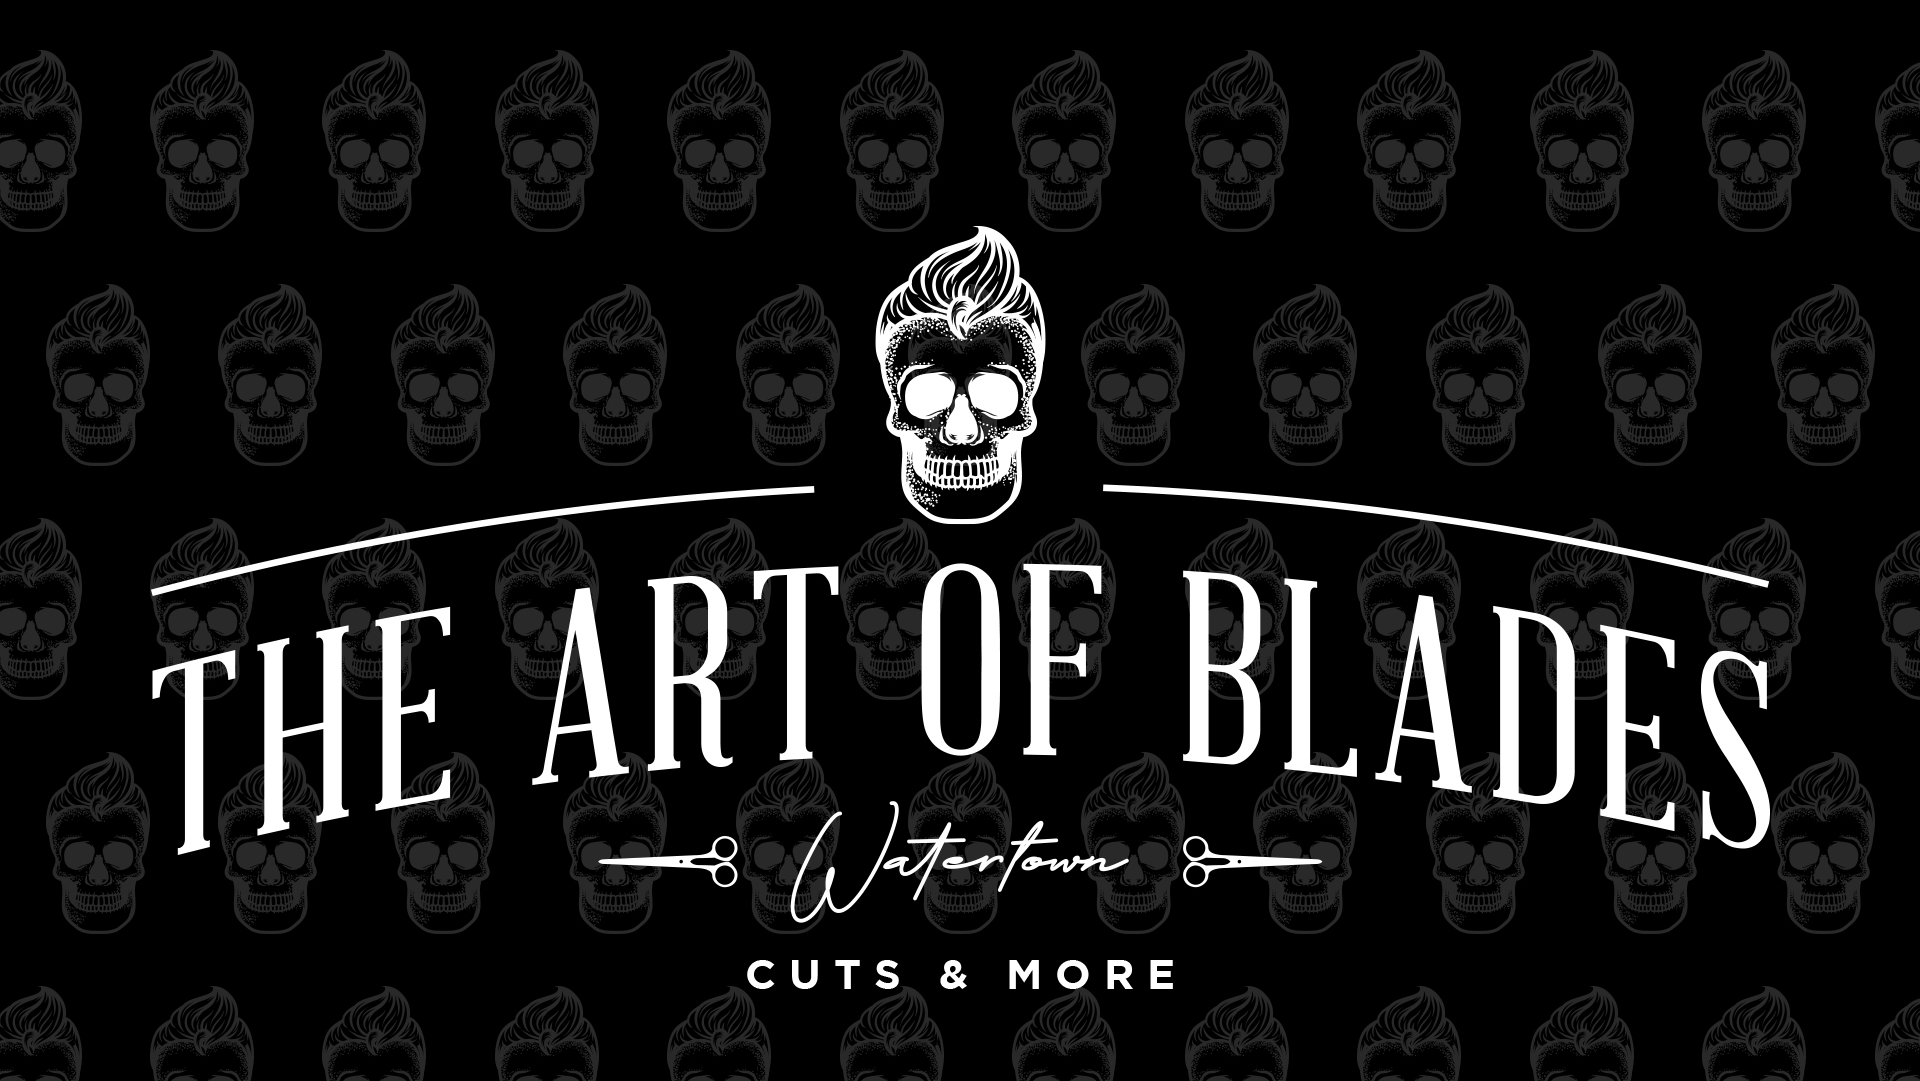 The Art Of Blades Barbershop Watertown